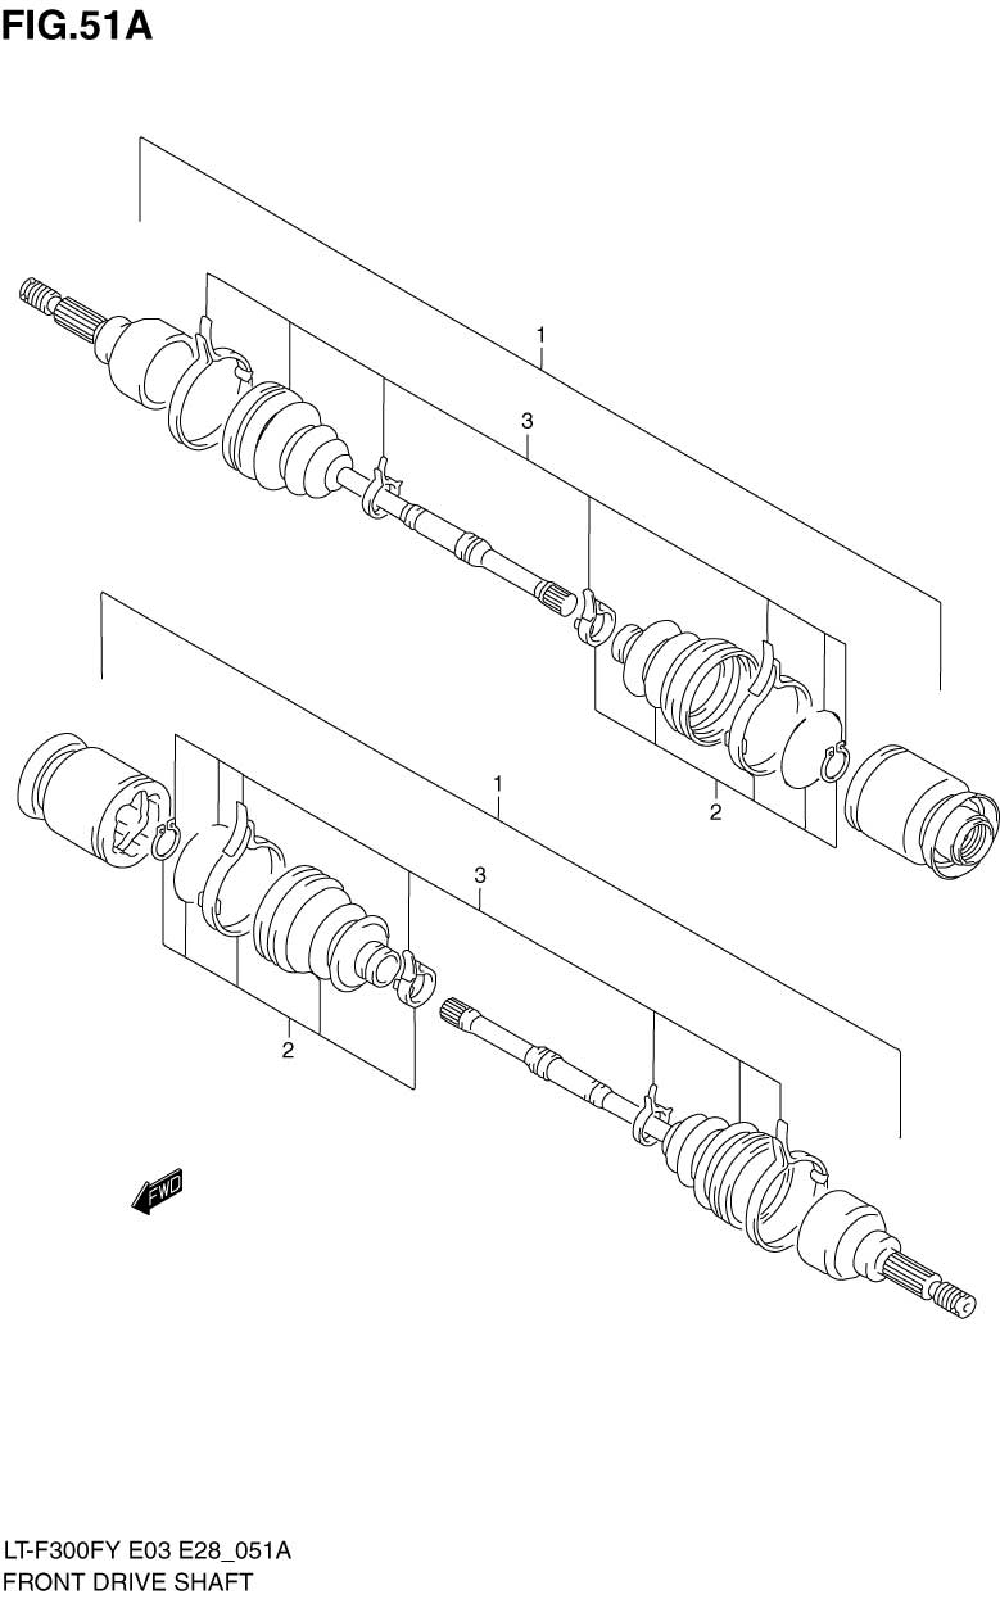 Front drive shaft (model k1_k2)